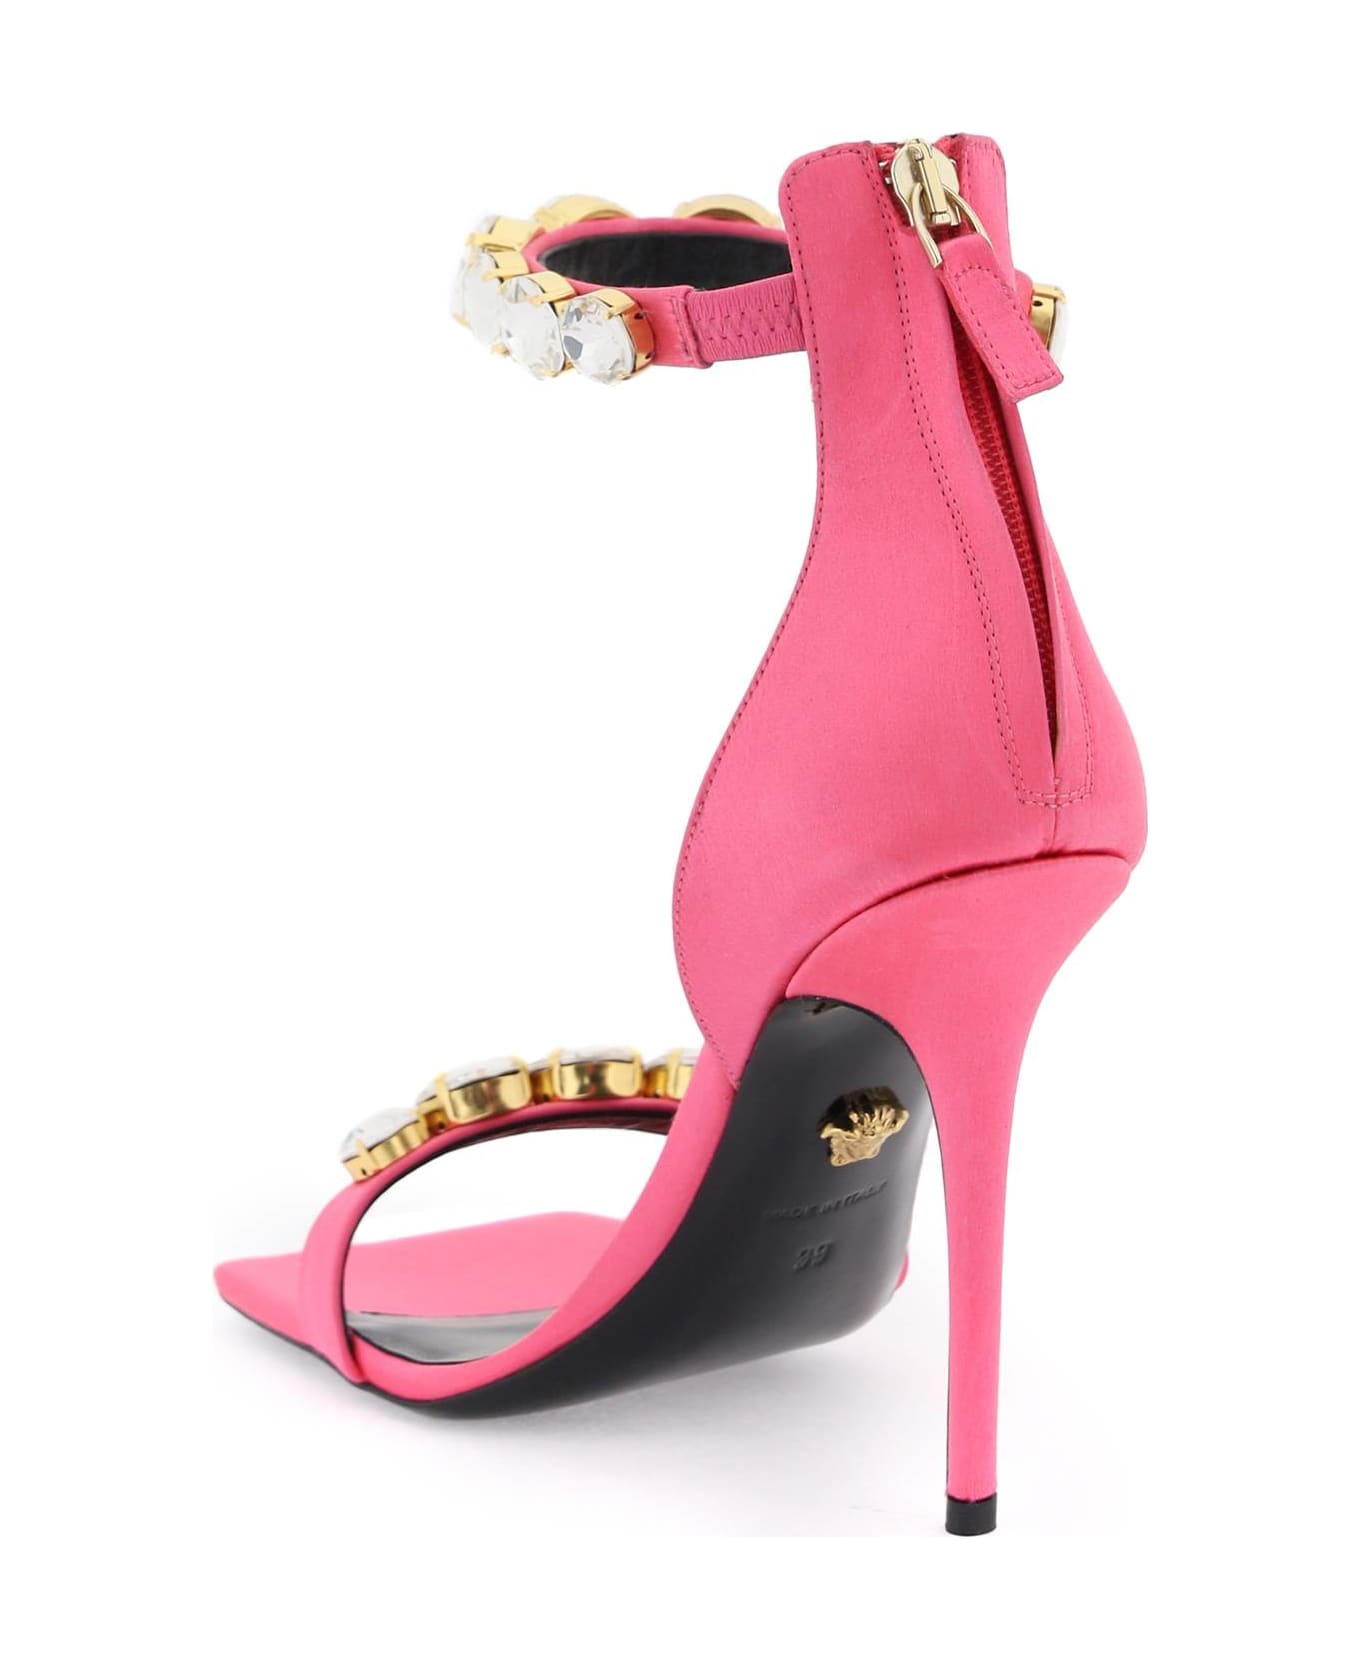 Versace Crystal Satin Sandals - FLAMINGO VERSACE GOLD (Pink)